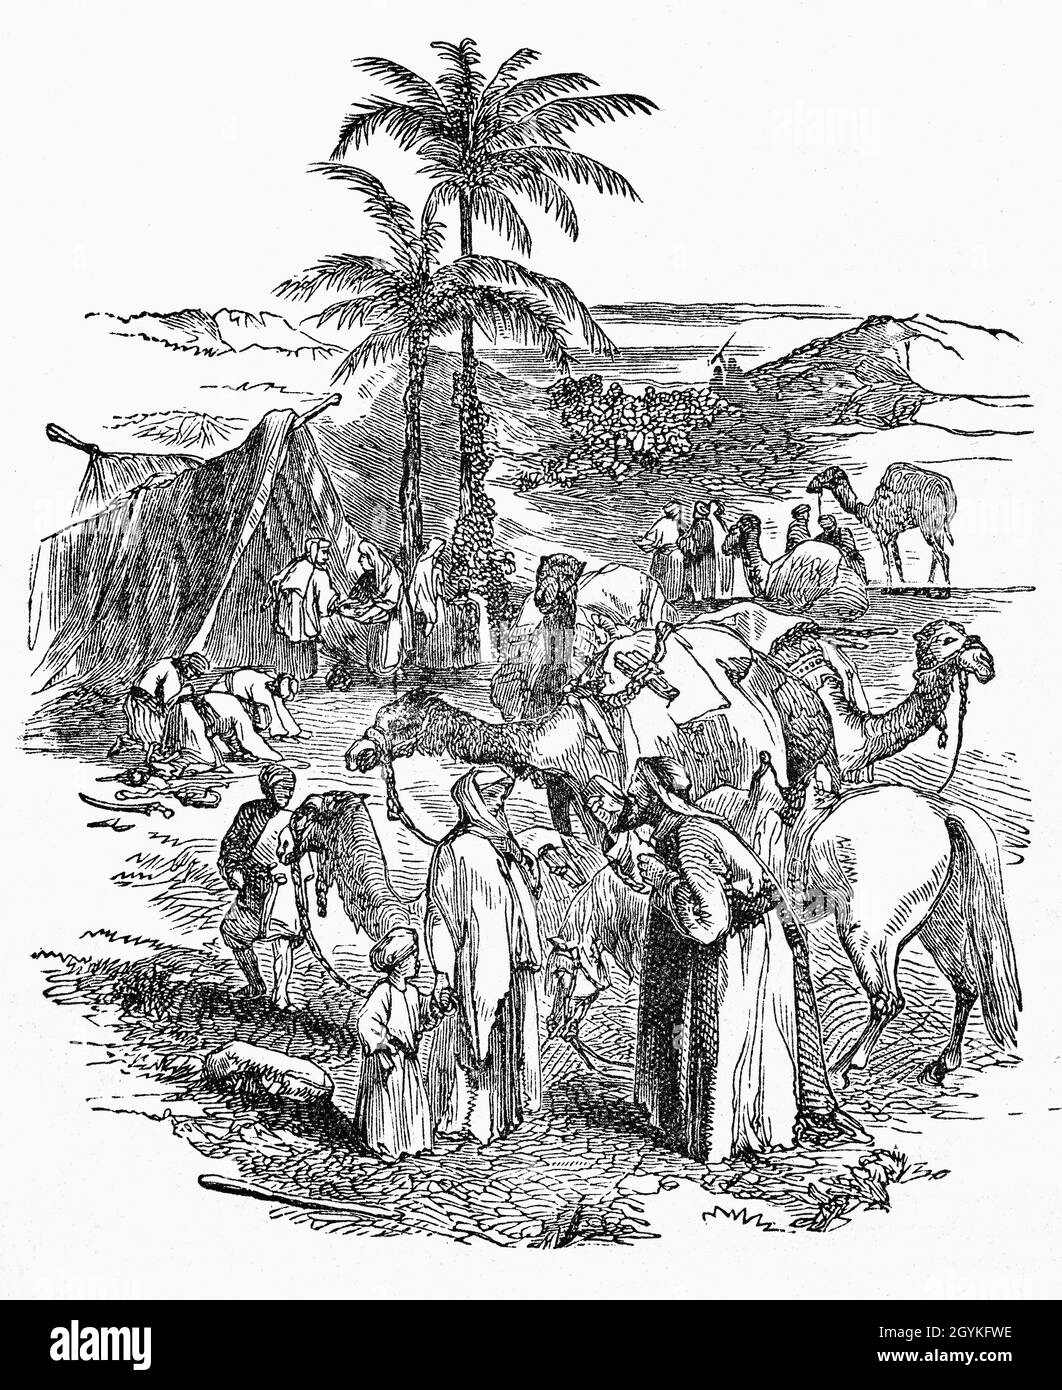 Eine Illustration aus dem Buch Genesis des Lagers Abrahams aus dem späten 19. Jahrhundert, als er in die Nähe der großen Bäume Mamres nach Hebron zog, wo er seine Zelte aufschlug und Gott einen Altar baute. Stockfoto